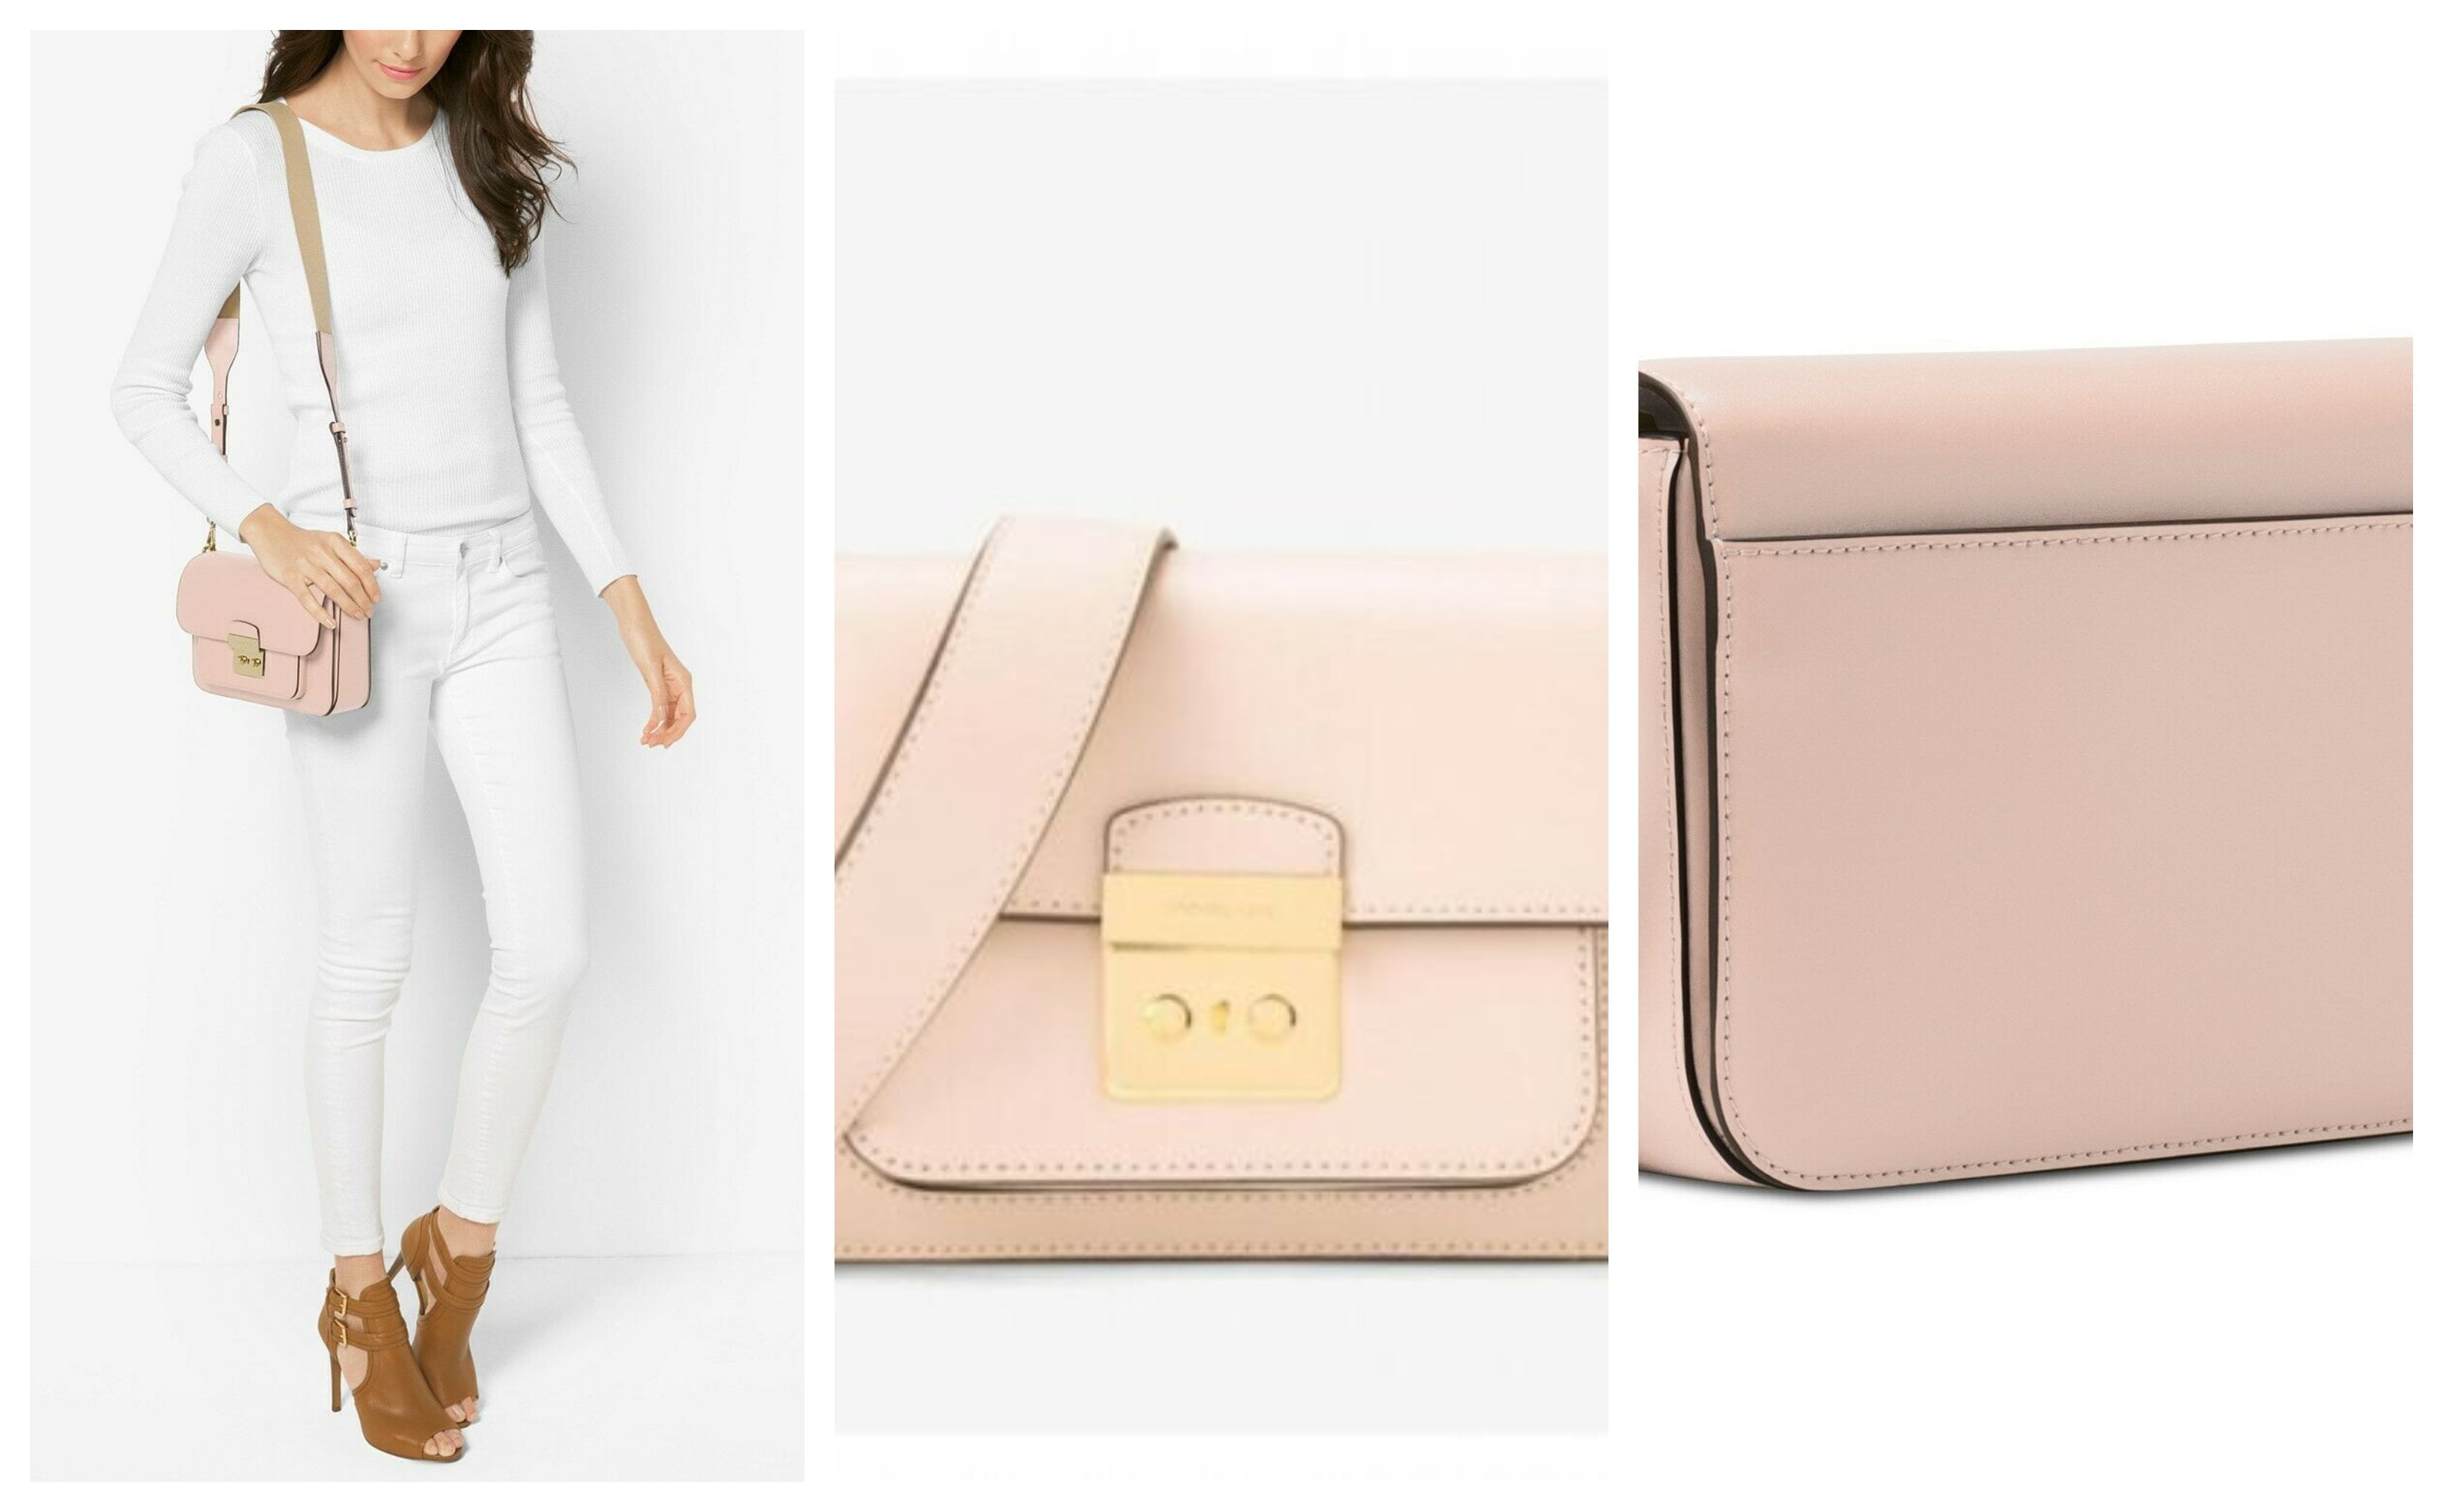 Michael Kors Jet Set Chain Saffiano Soft Pink Leather Large Shoulder Tote  Bag | eBay